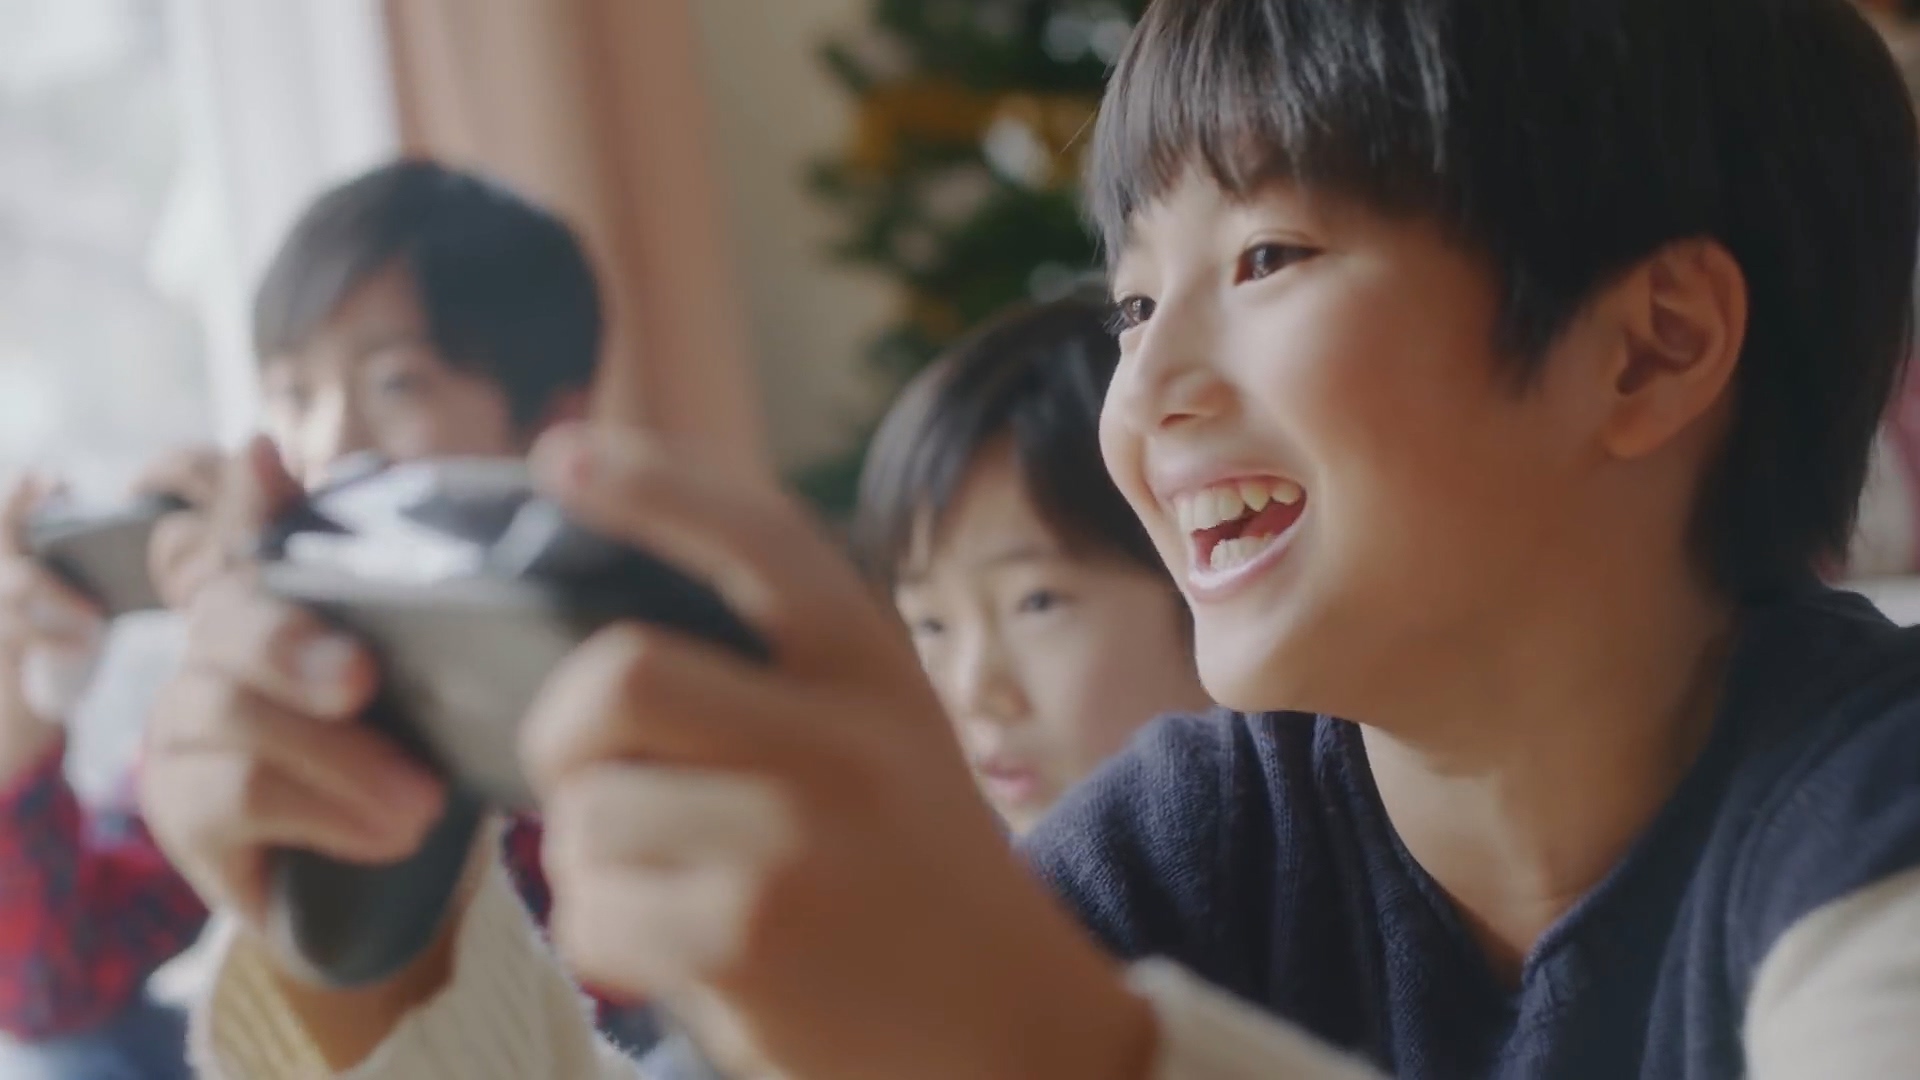 任天堂发布冬季Switch广告片 合家欢场面羡煞旁人